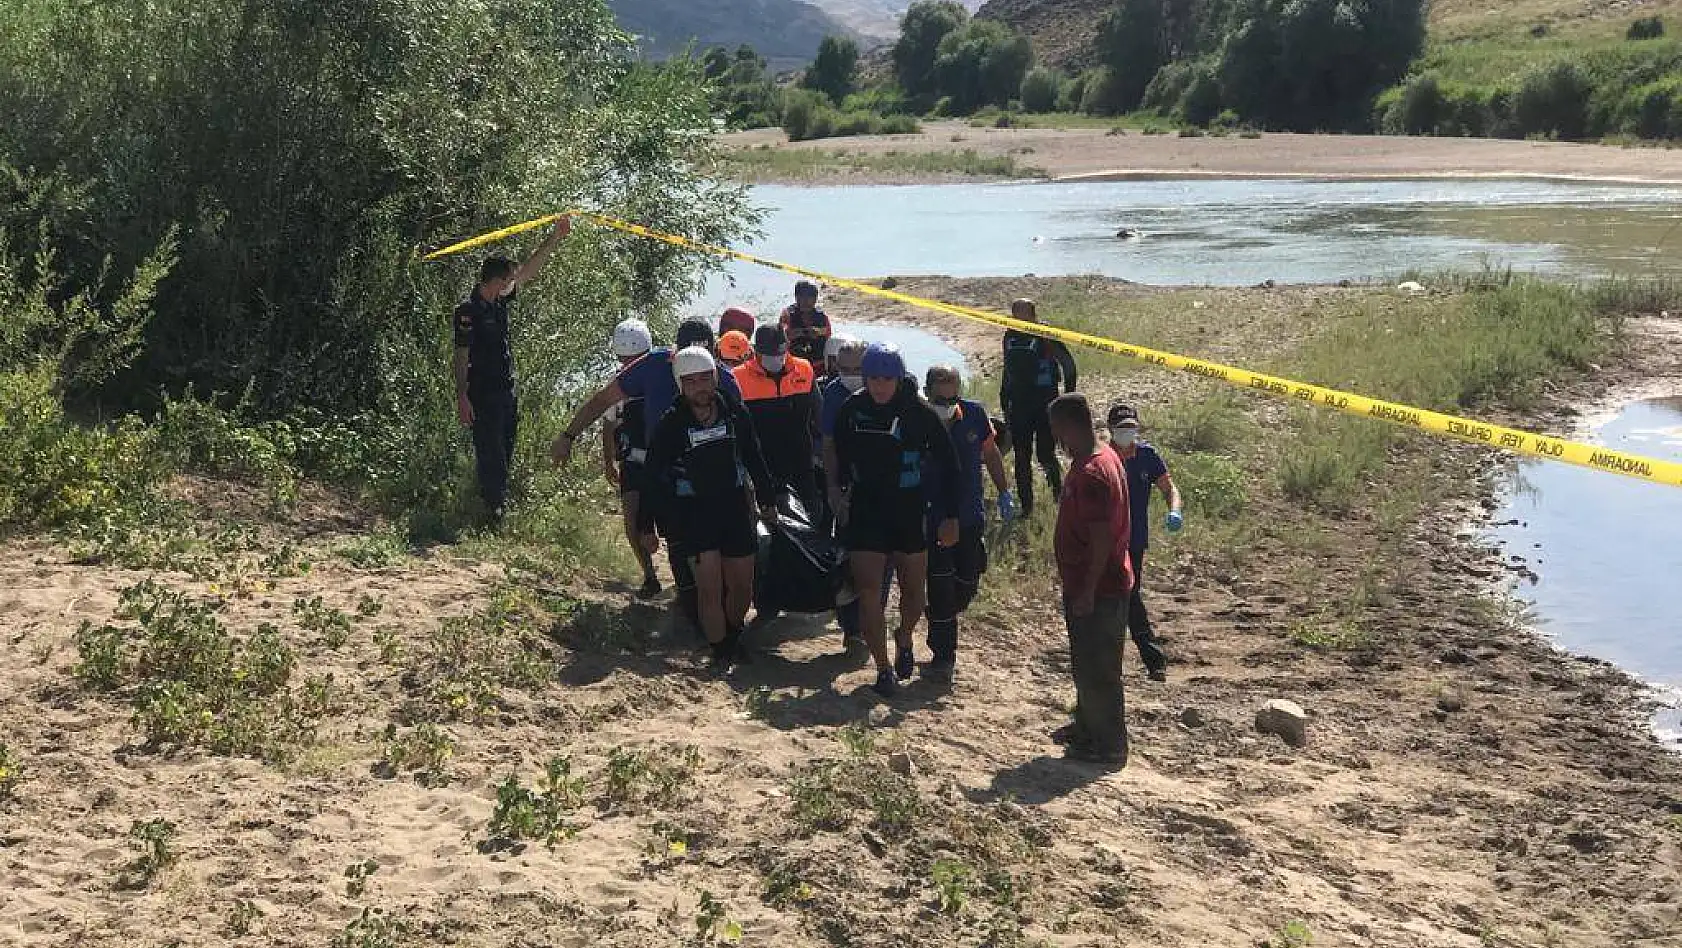 Bir ırmak faciası daha!Irmağa giren iki çocuk boğuldu, baba kayıp